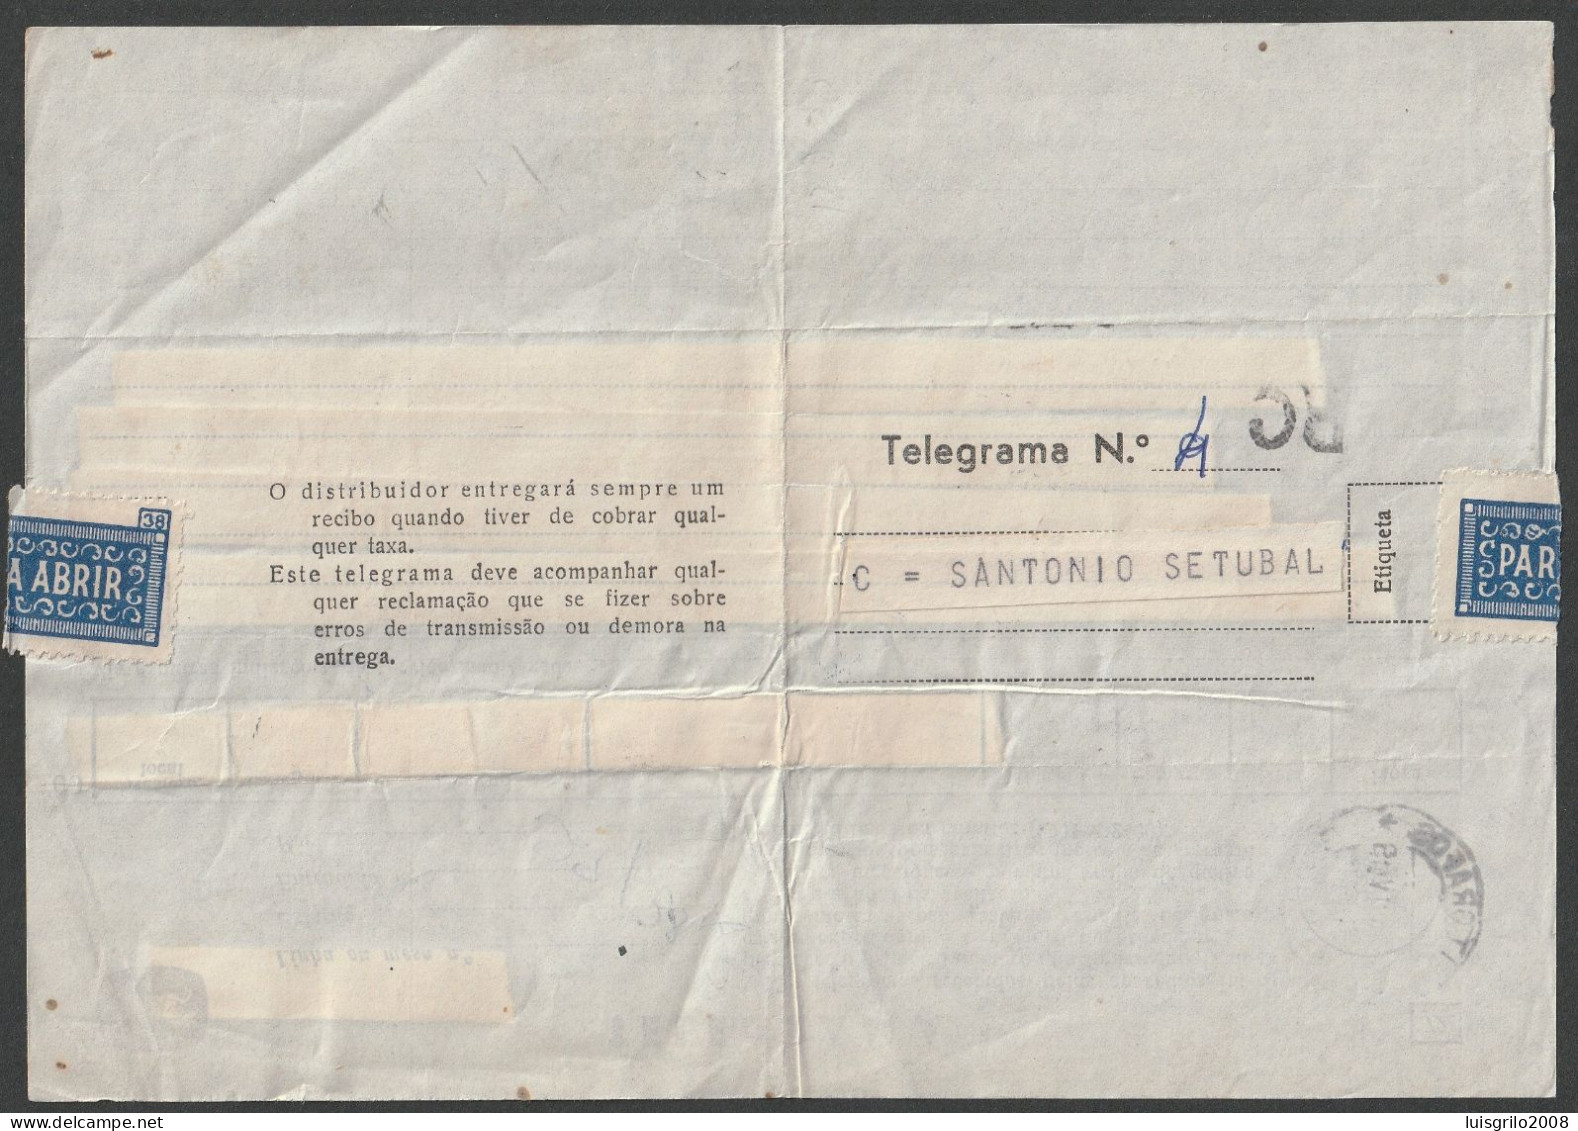 Telegram/ Telegrama - Lisboa > Setúbal -|- Postmark - TELEGRAFOS. Setúbal. 1959 - Covers & Documents